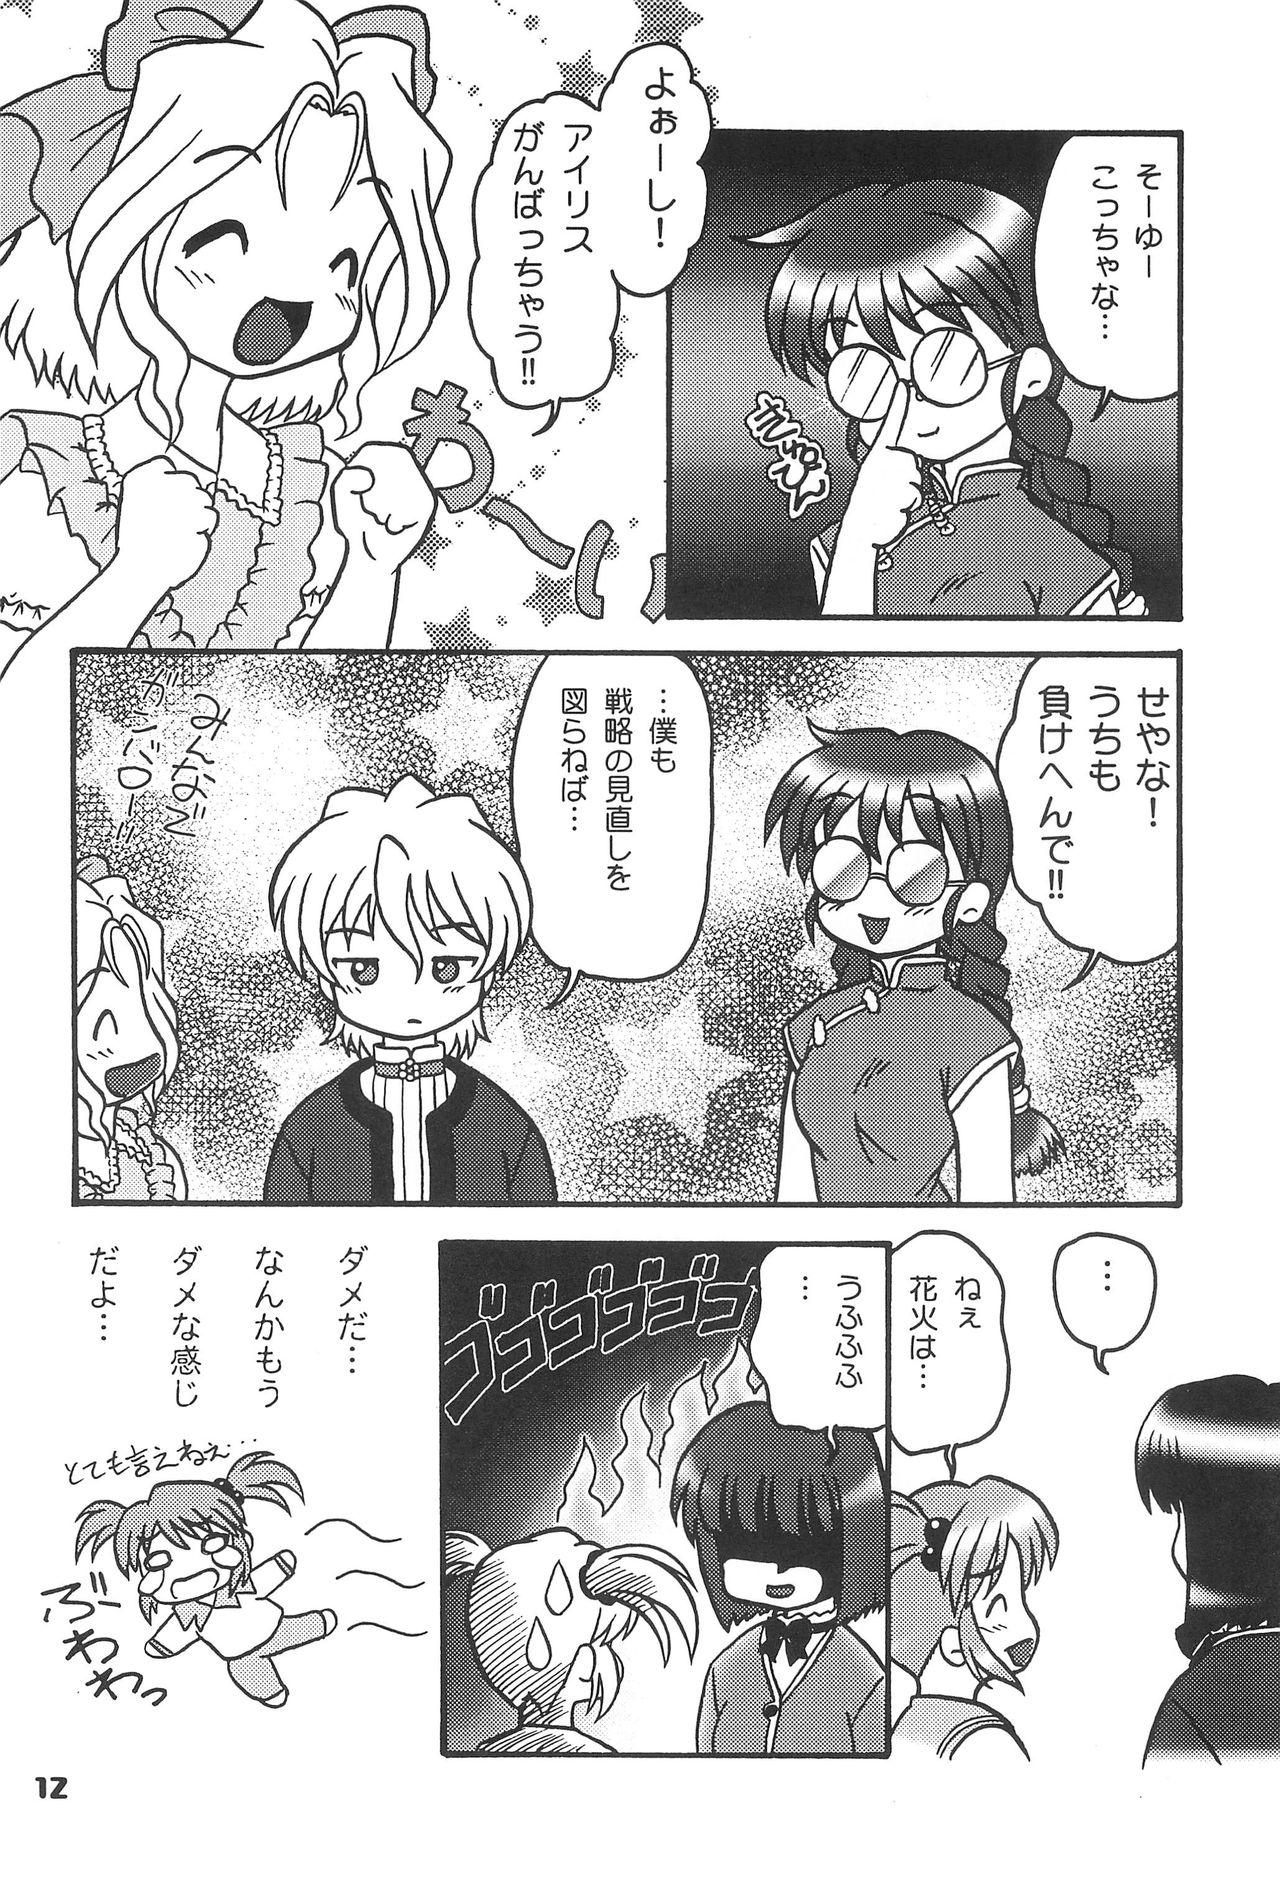 Camporn Kono Chiisana Mune no Uchi 2 - Sakura taisen Rough - Page 11